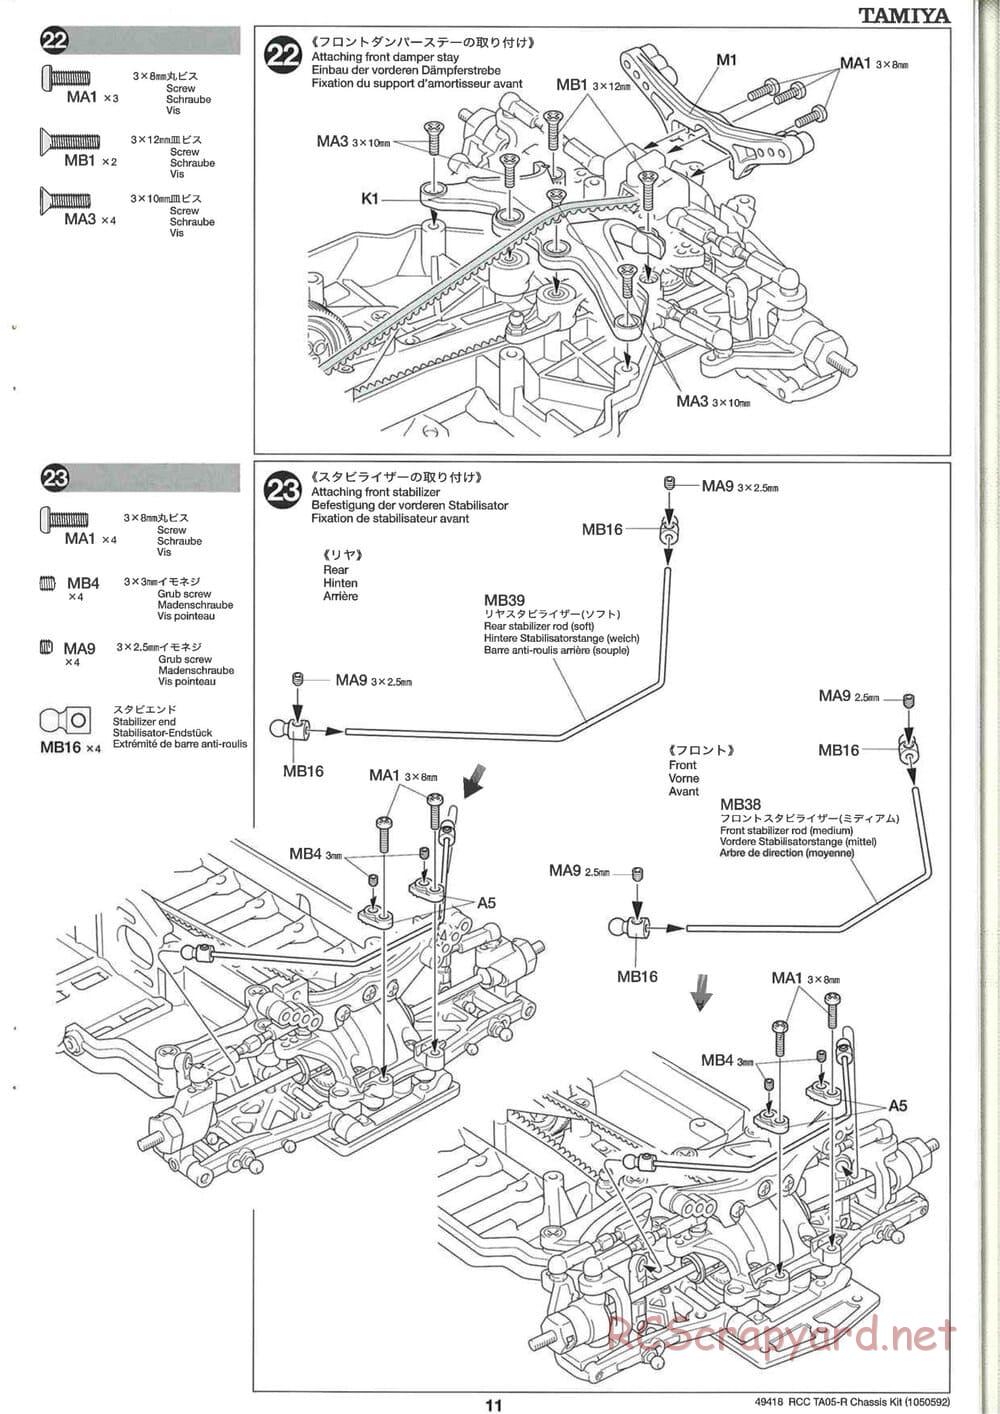 Tamiya - TA05-R Chassis - Manual - Page 11